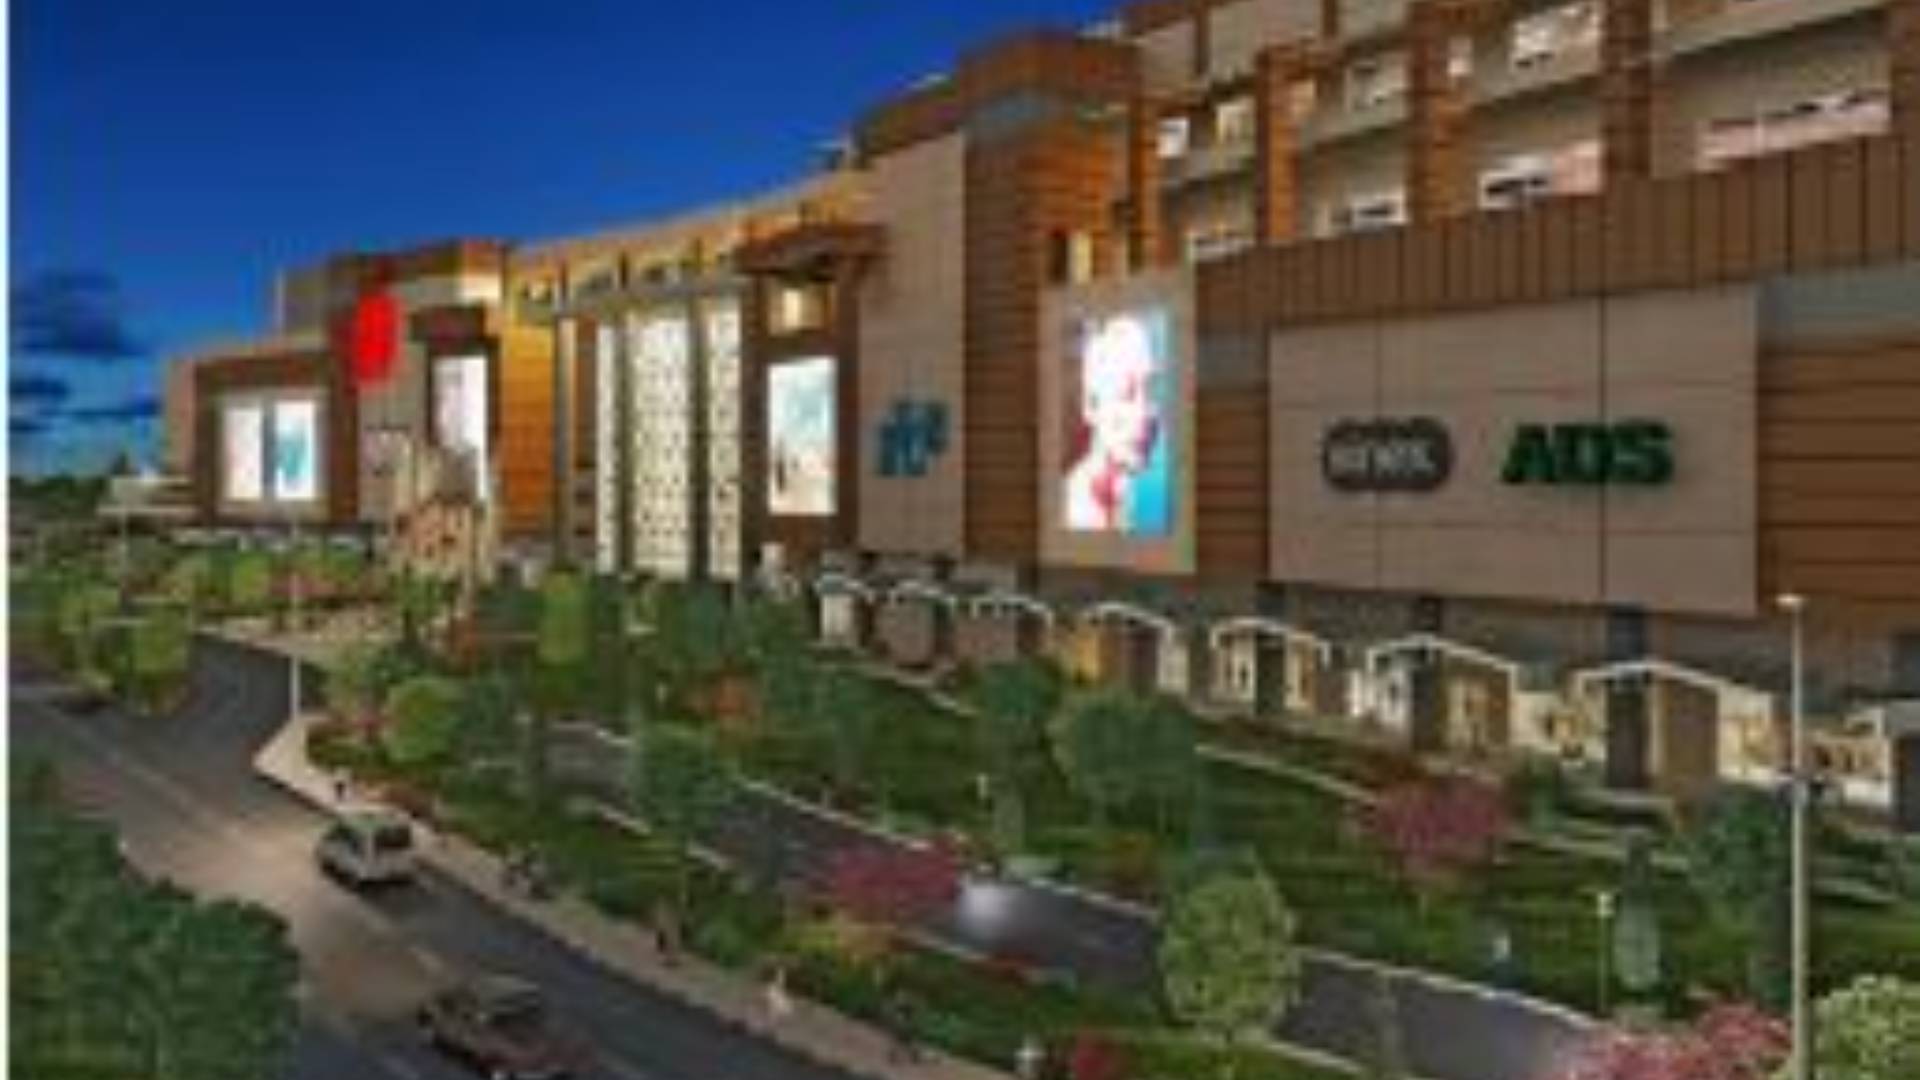 Mall of Erzurum